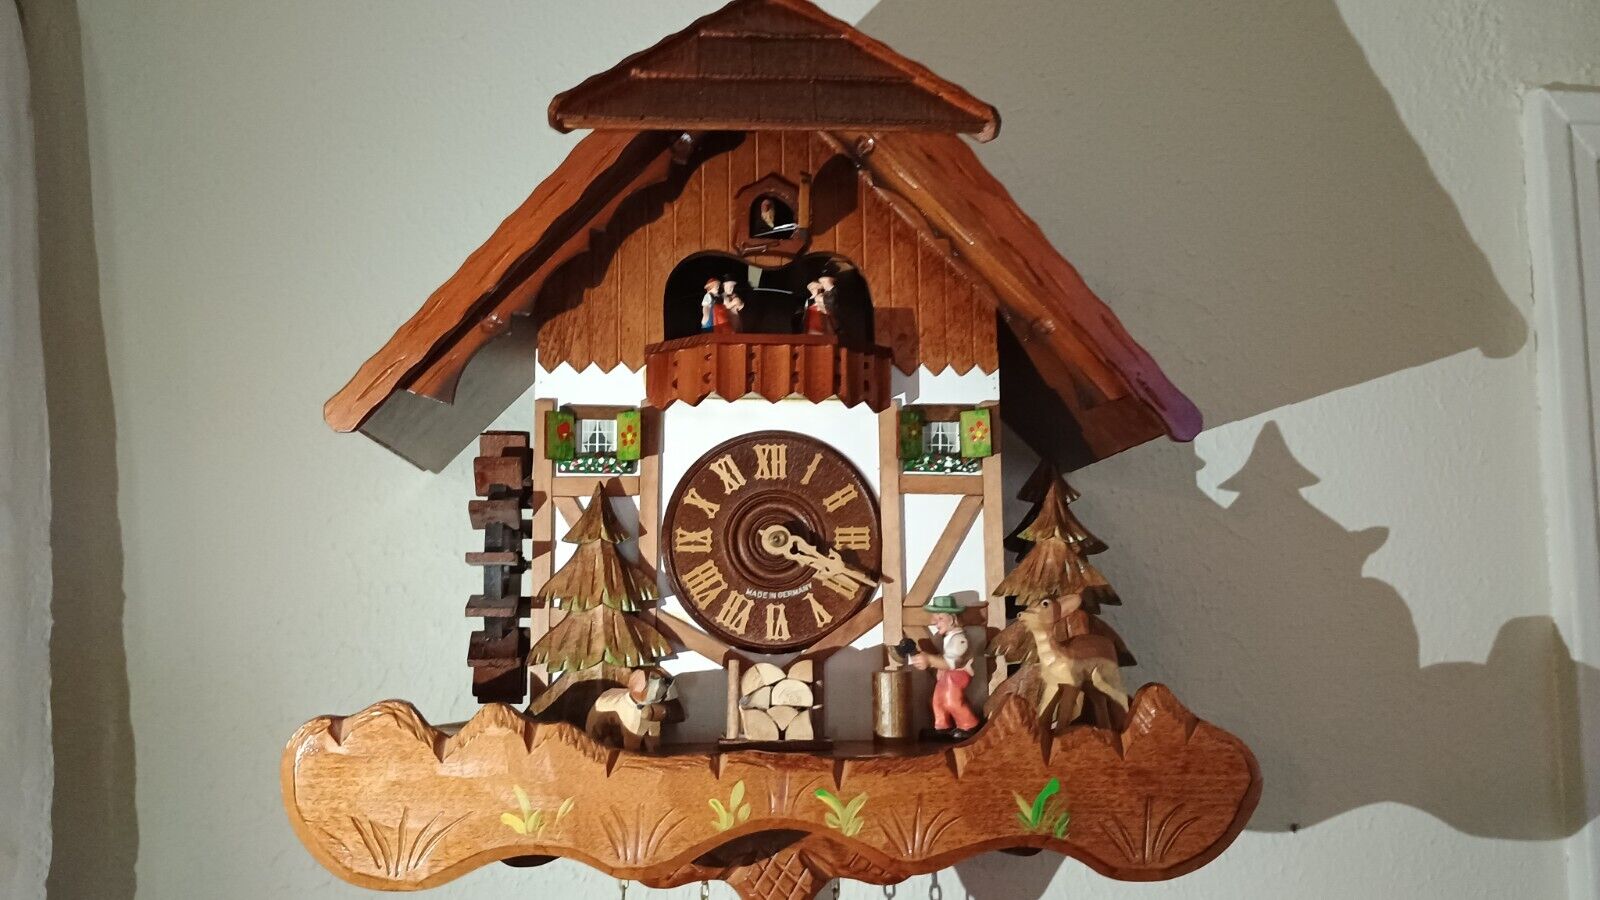 cuckoo clock (vintage) / Edelweiss Der frohliche Wanderer